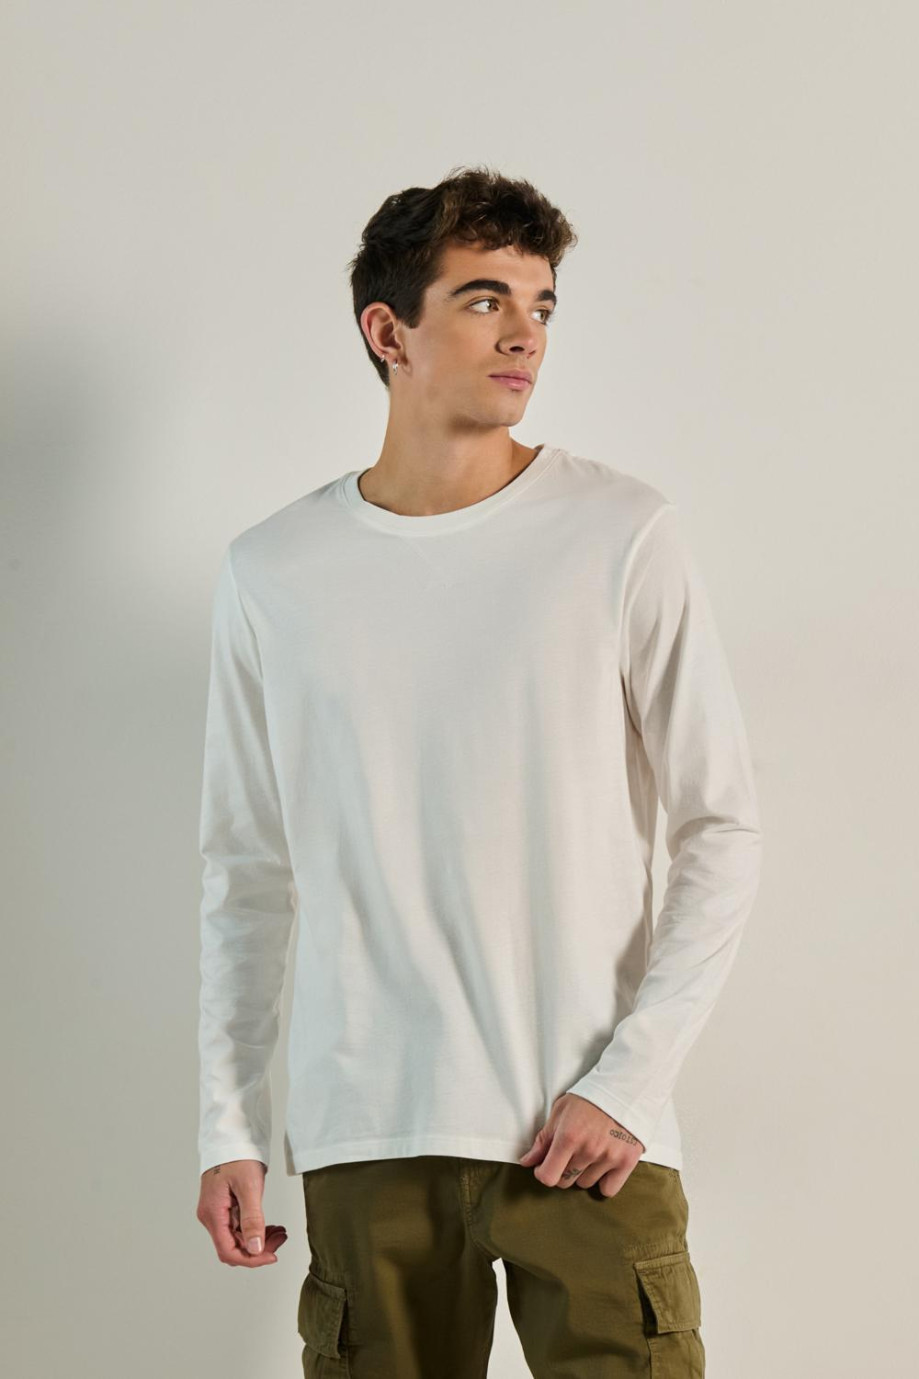 Camiseta manga larga unicolor con costura decorativa